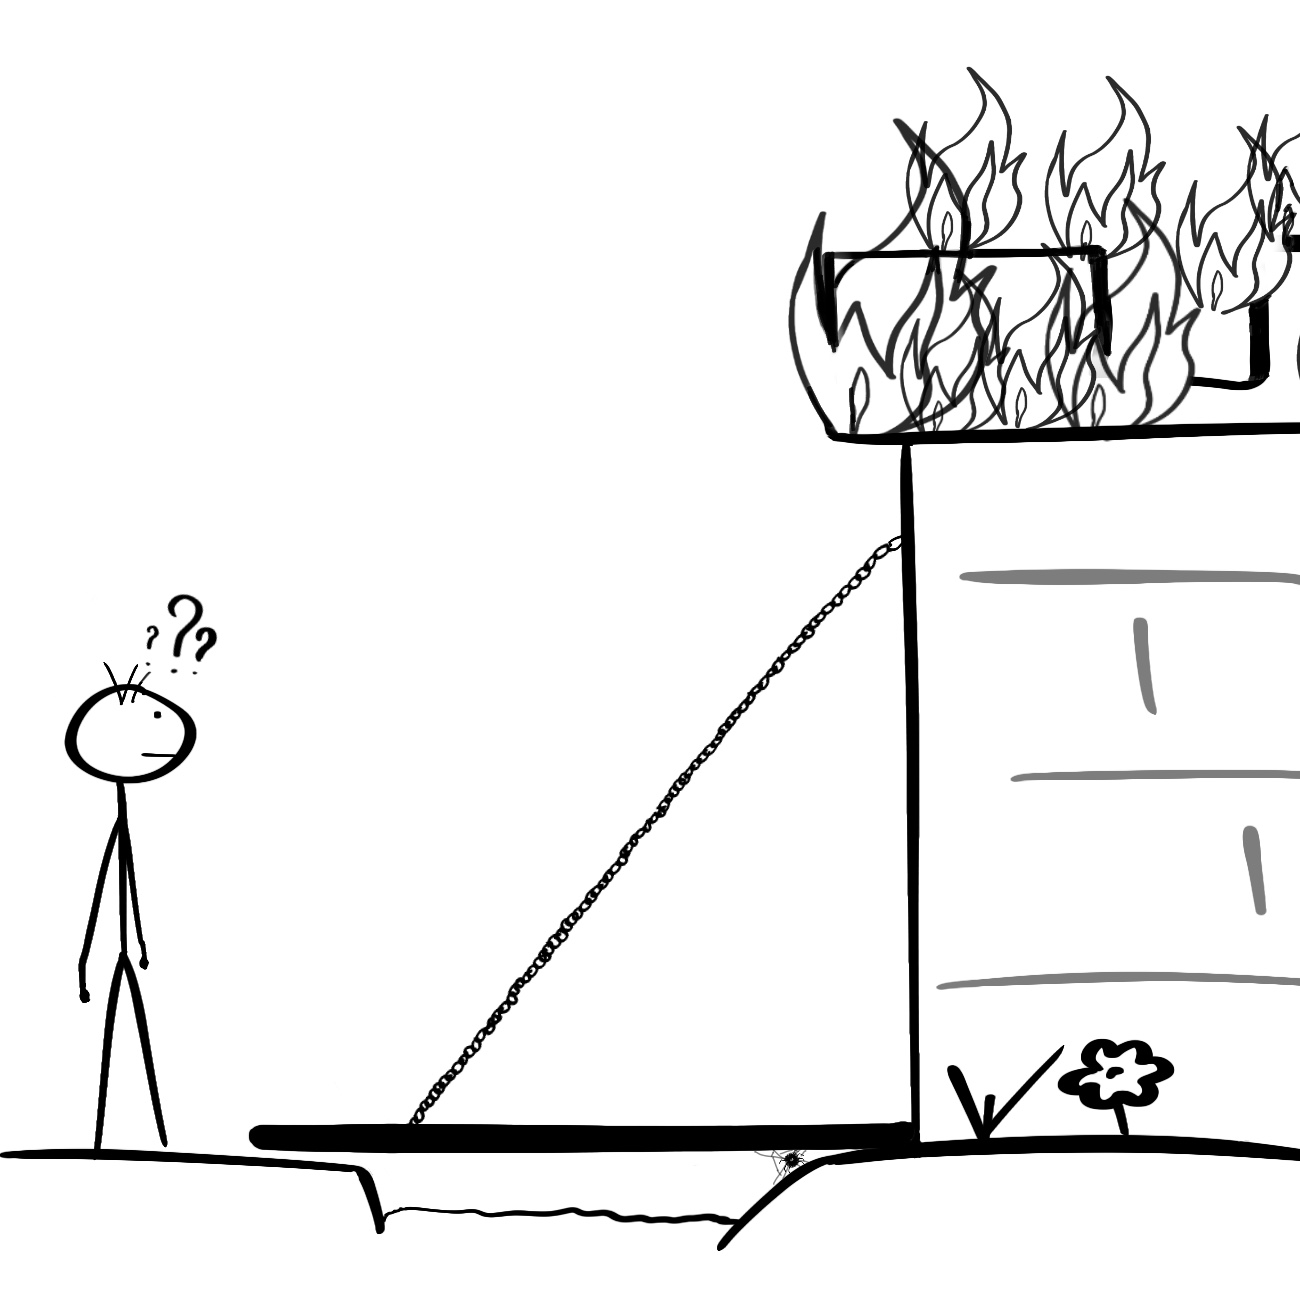 رسم توضيحي لتعذُّر استخدام المكتبة بسبب اشتعال النيران فيها